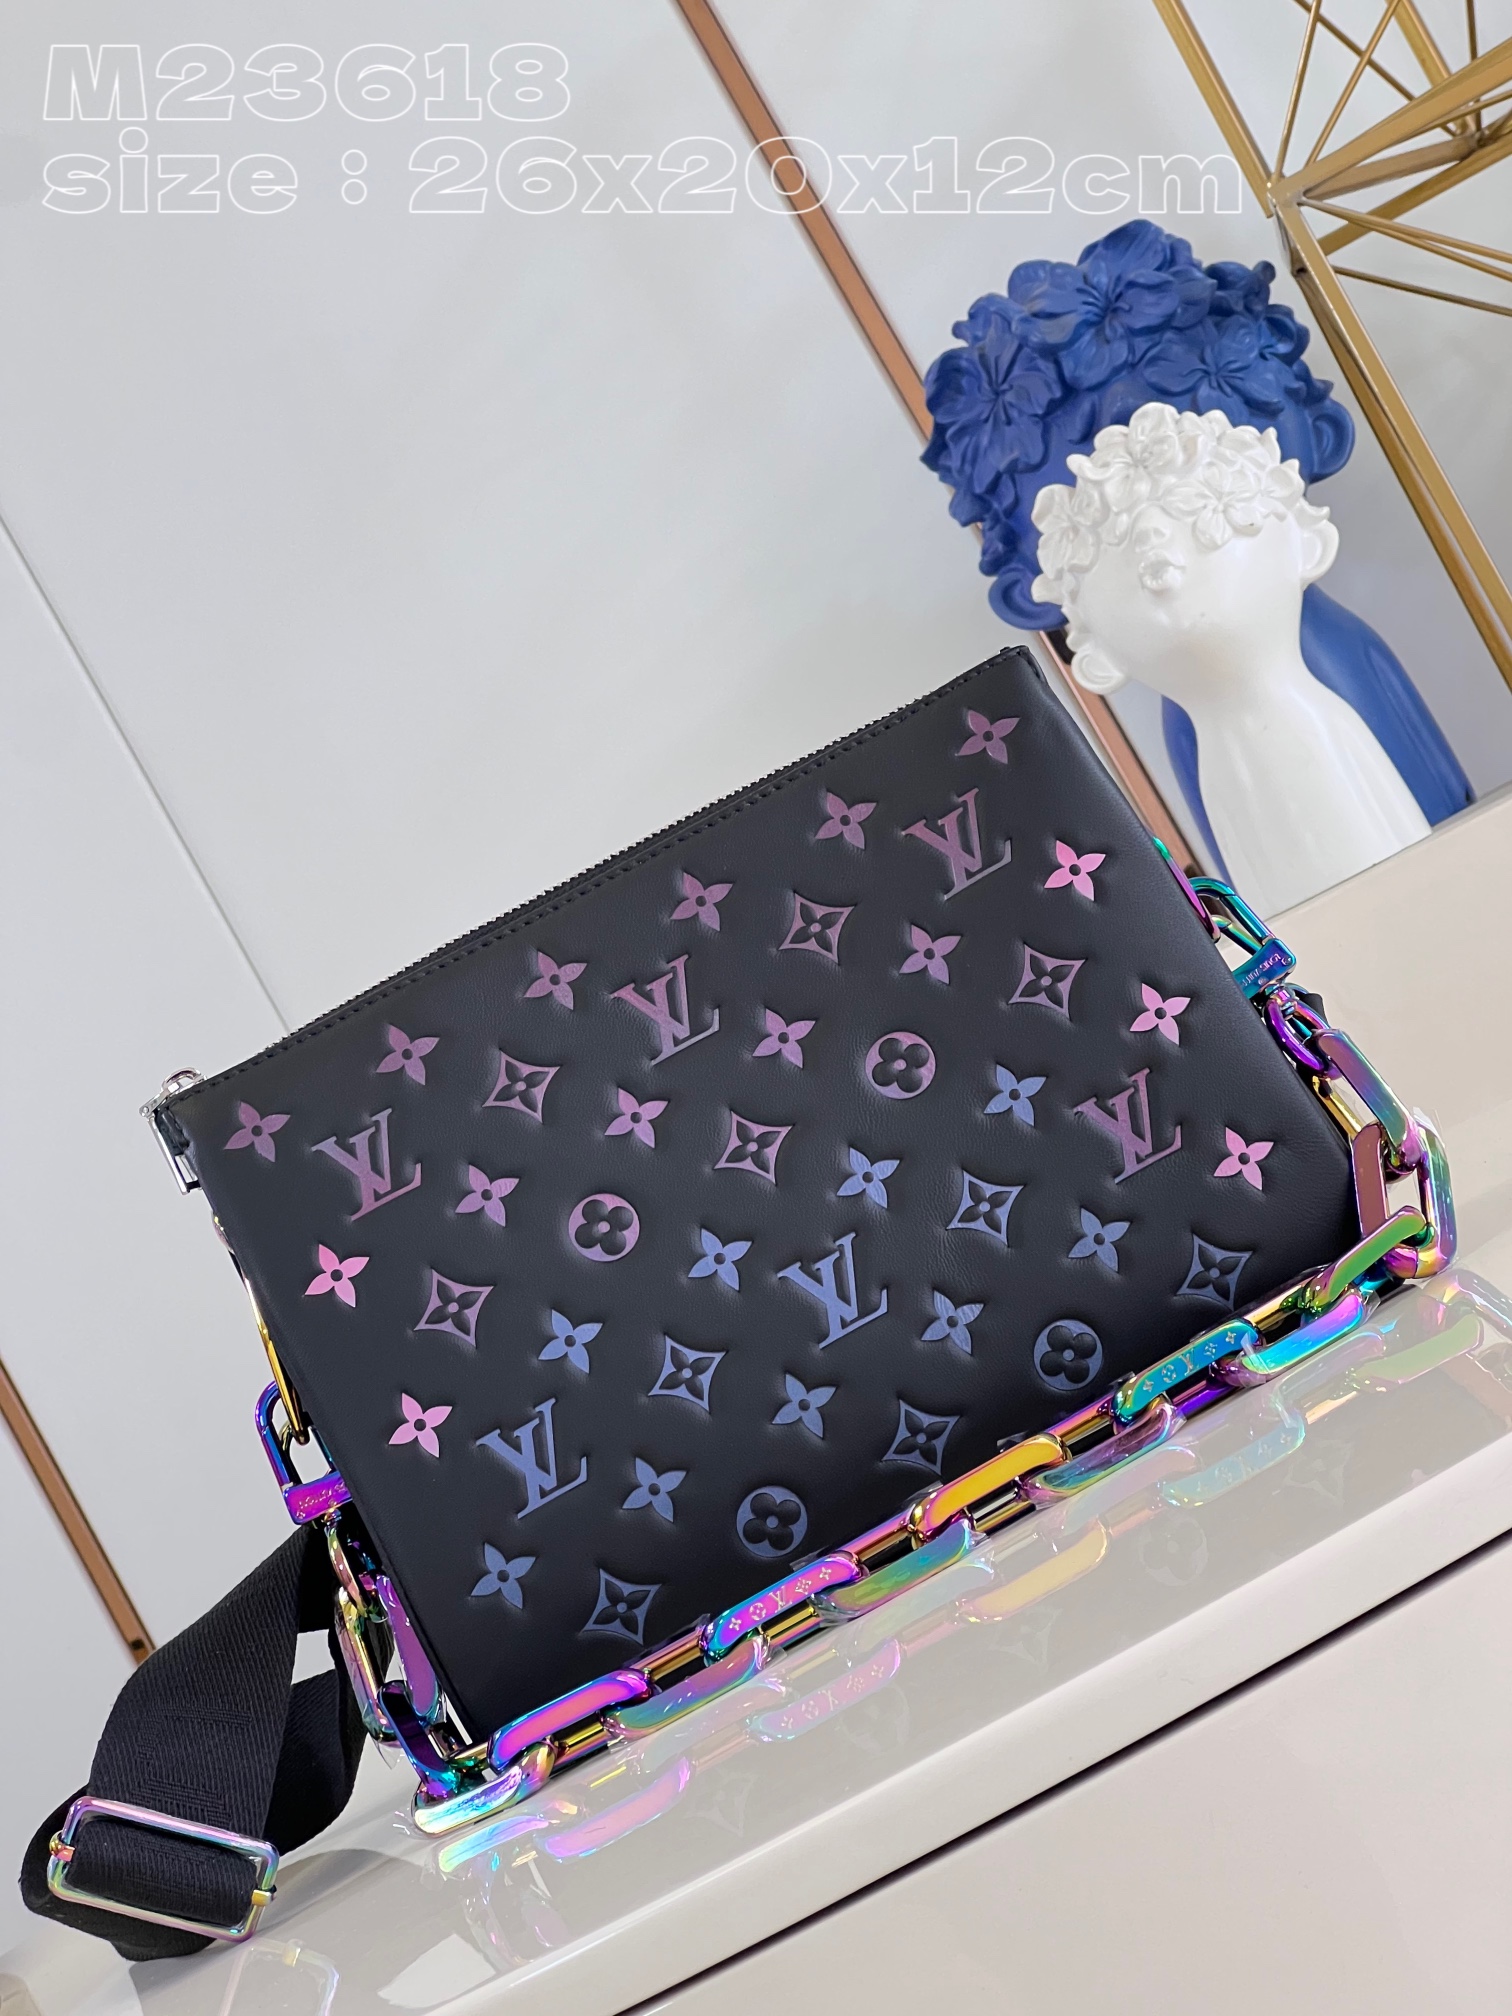 Louis Vuitton LV Coussin Bags Handbags Black Sheepskin Chains M23618